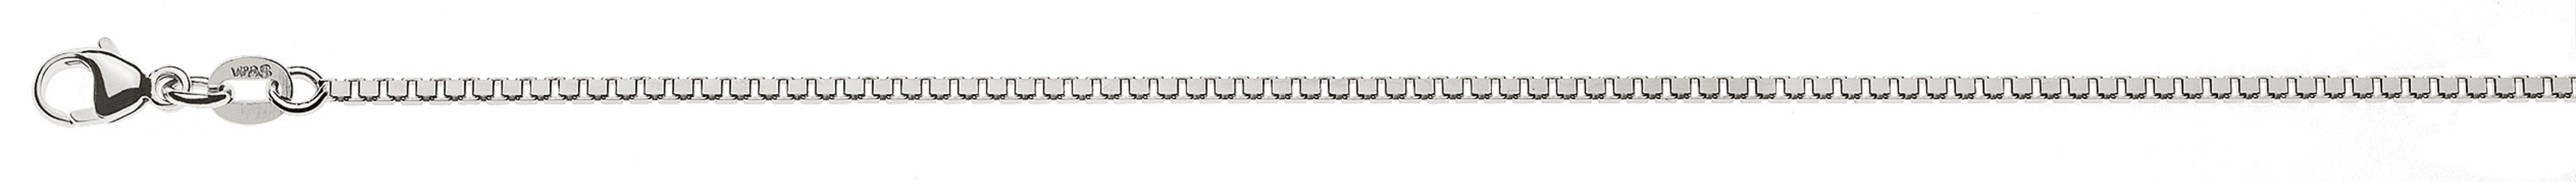 AURONOS Prestige Halskette Weissgold 18K Venezianerkette diamantiert 38cm 1.4mm